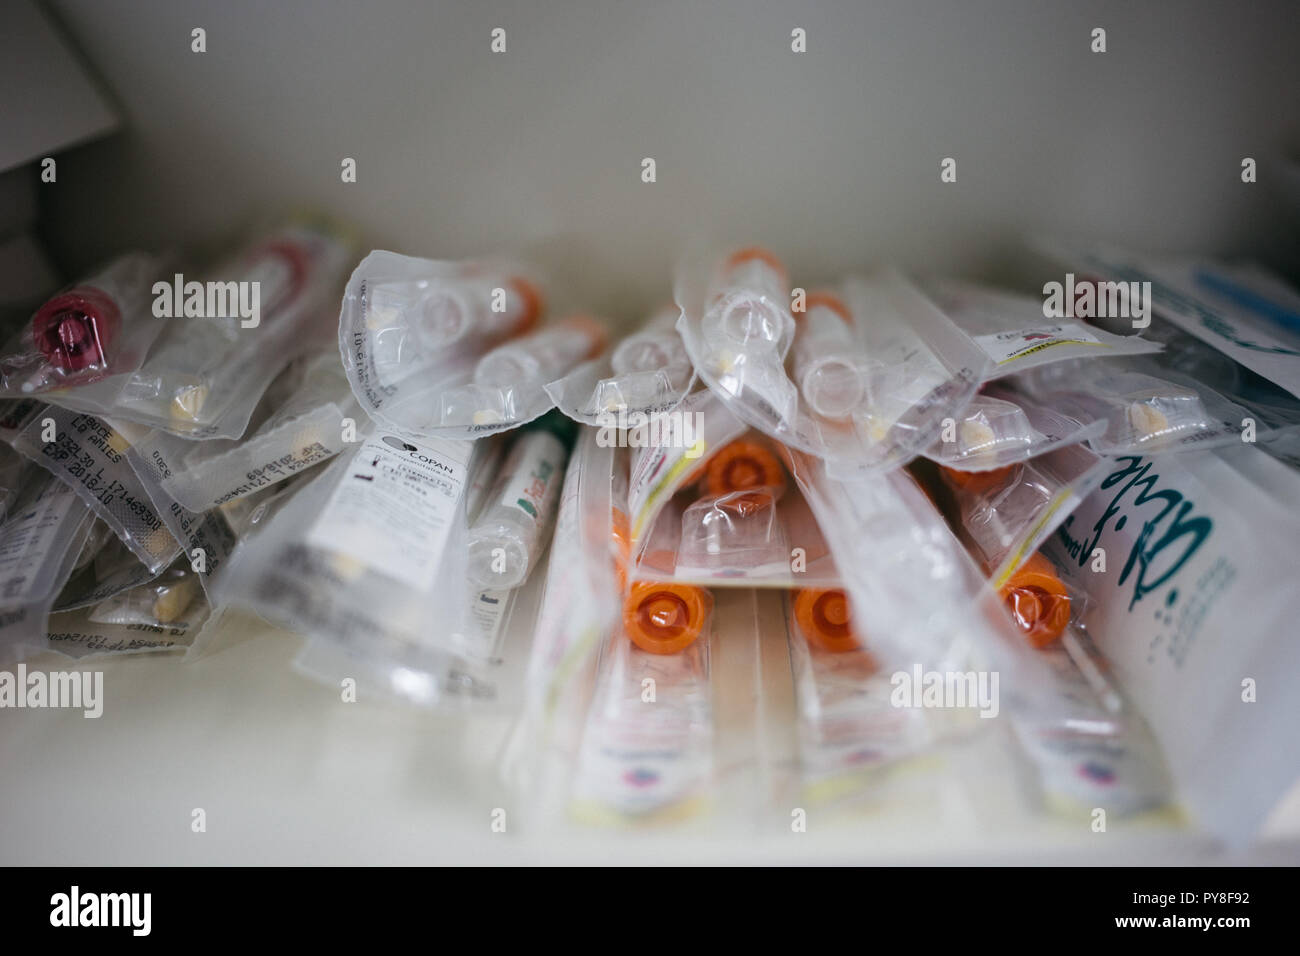 Frjasino, Russland - 06 11 2018: Behälter, die für den biologischen Material auf einem blauen Hintergrund, der Sterilverpackung. Themen für medizinische Forschung Stockfoto